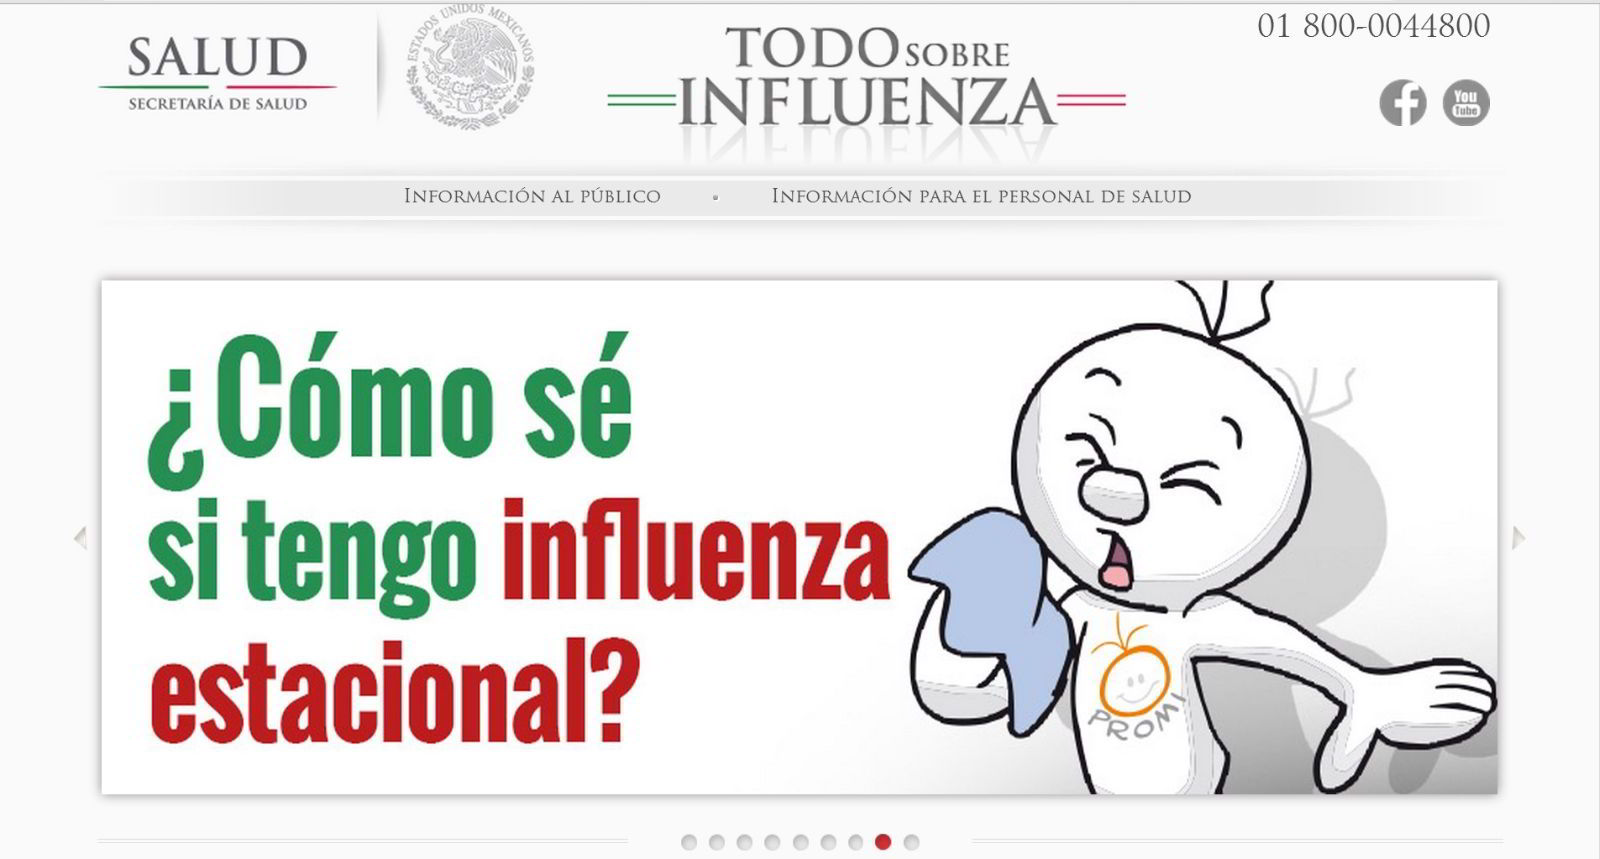 Captura de pantalla de la página www.todosobreinfluenza.salud.gob.mx